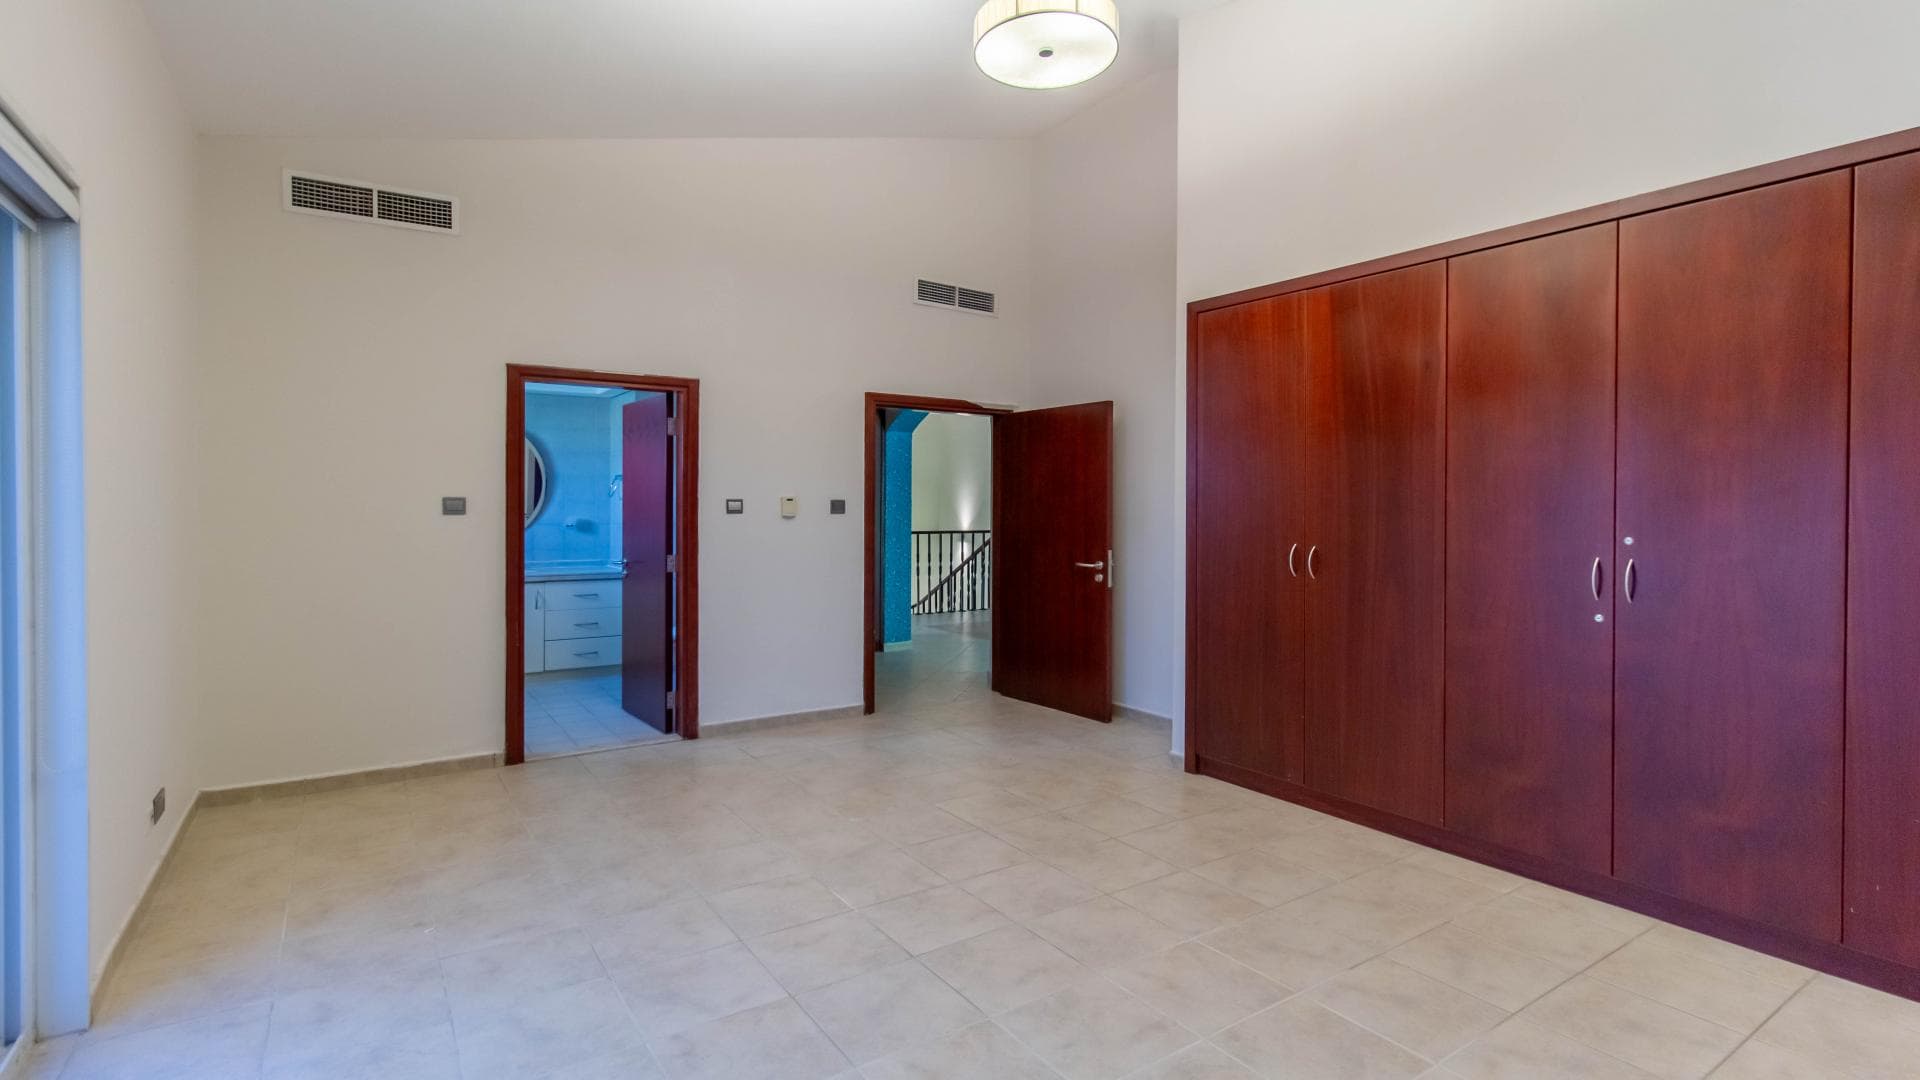 5 Bedroom Villa For Rent Al Thamam 36 Lp37795 274d0ecfe8f98a00.jpg